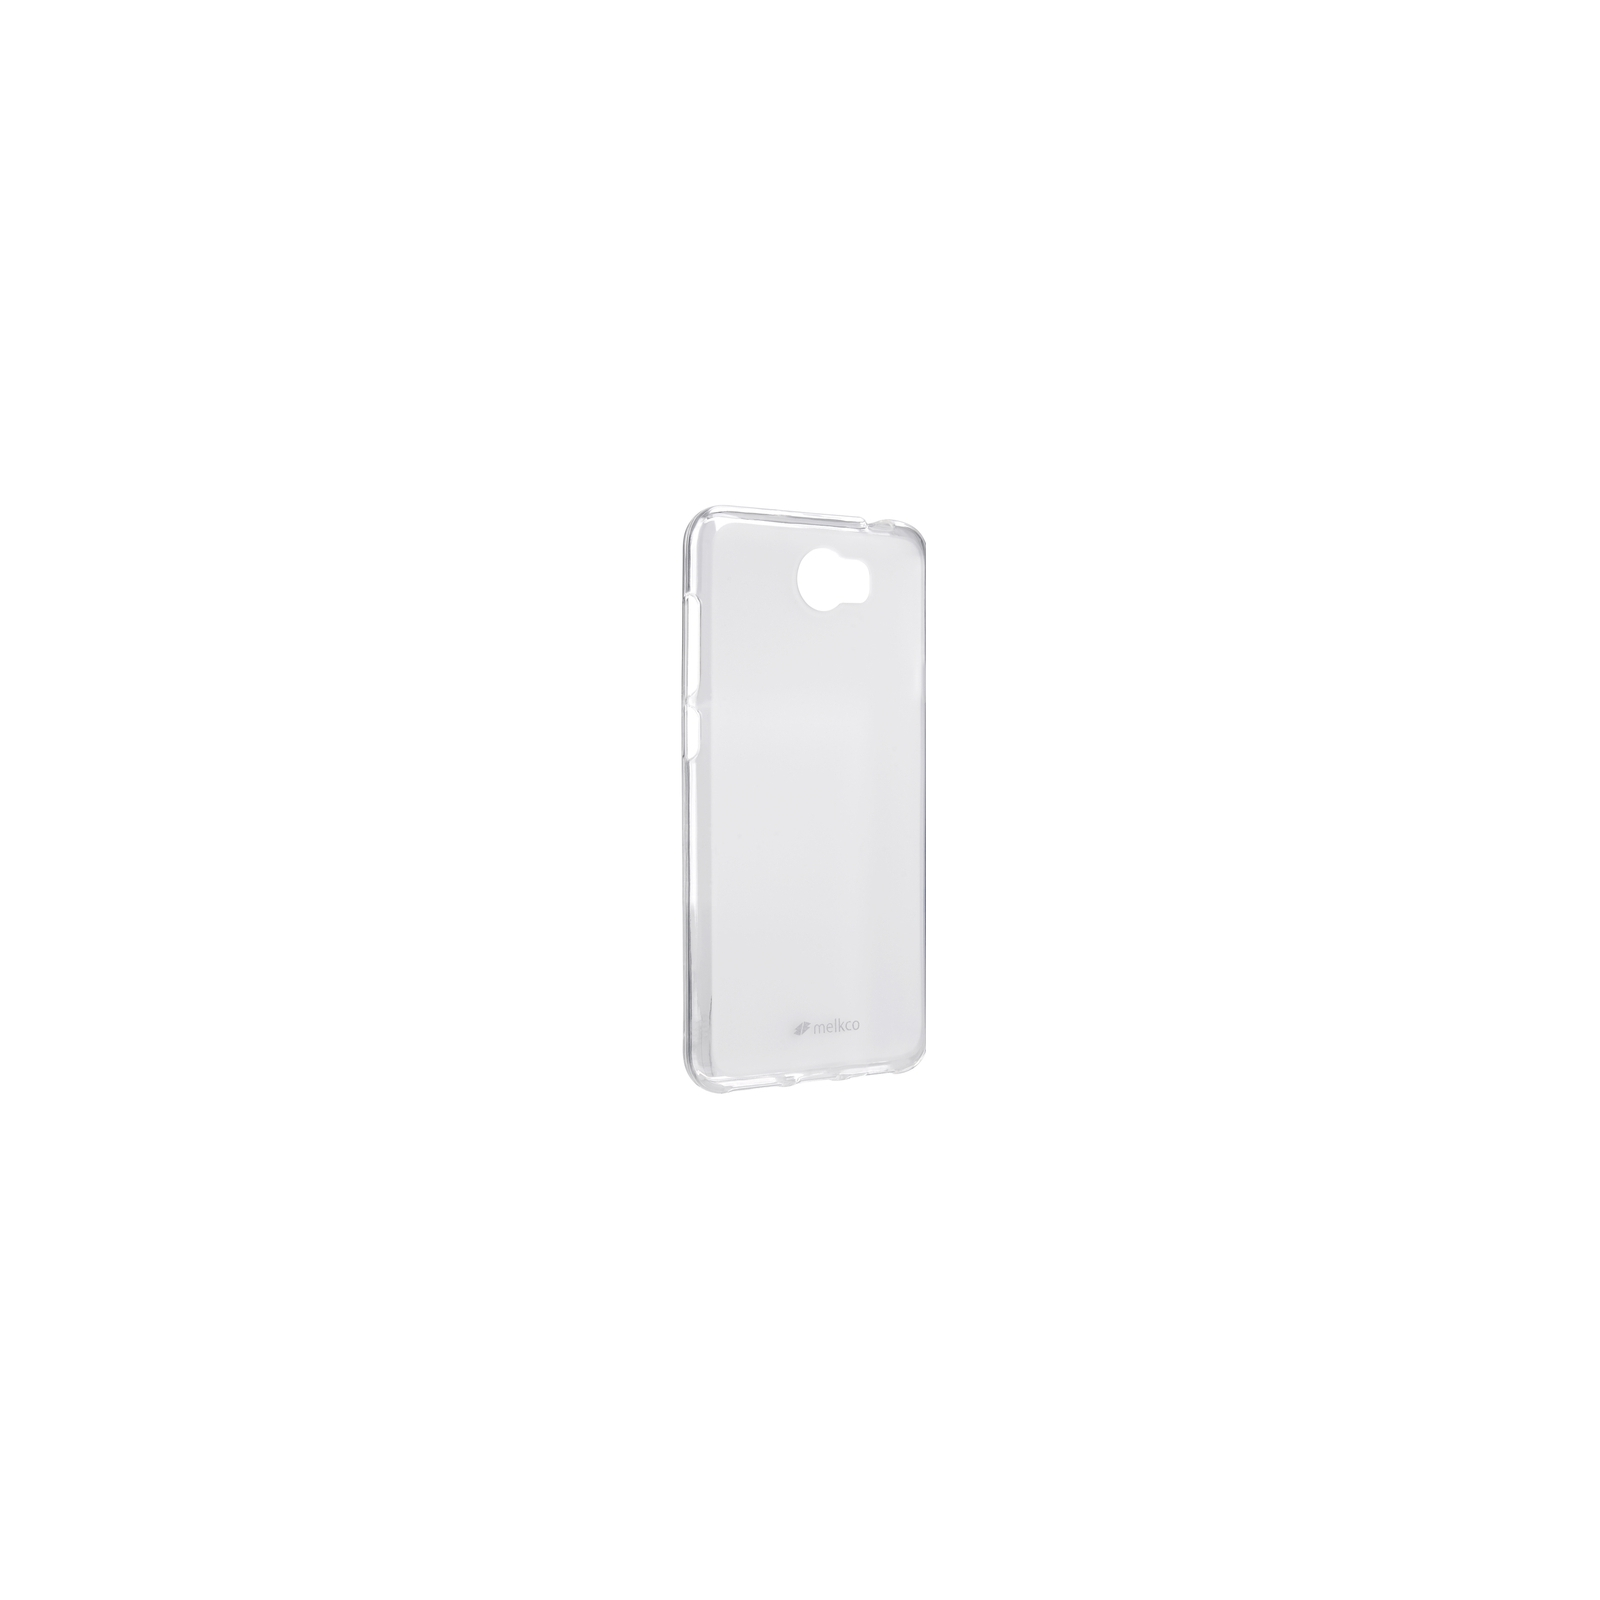 Чехол для мобильного телефона Melkco для Huawei Y5 II - Poly Jacket TPU Transparent (6284953)